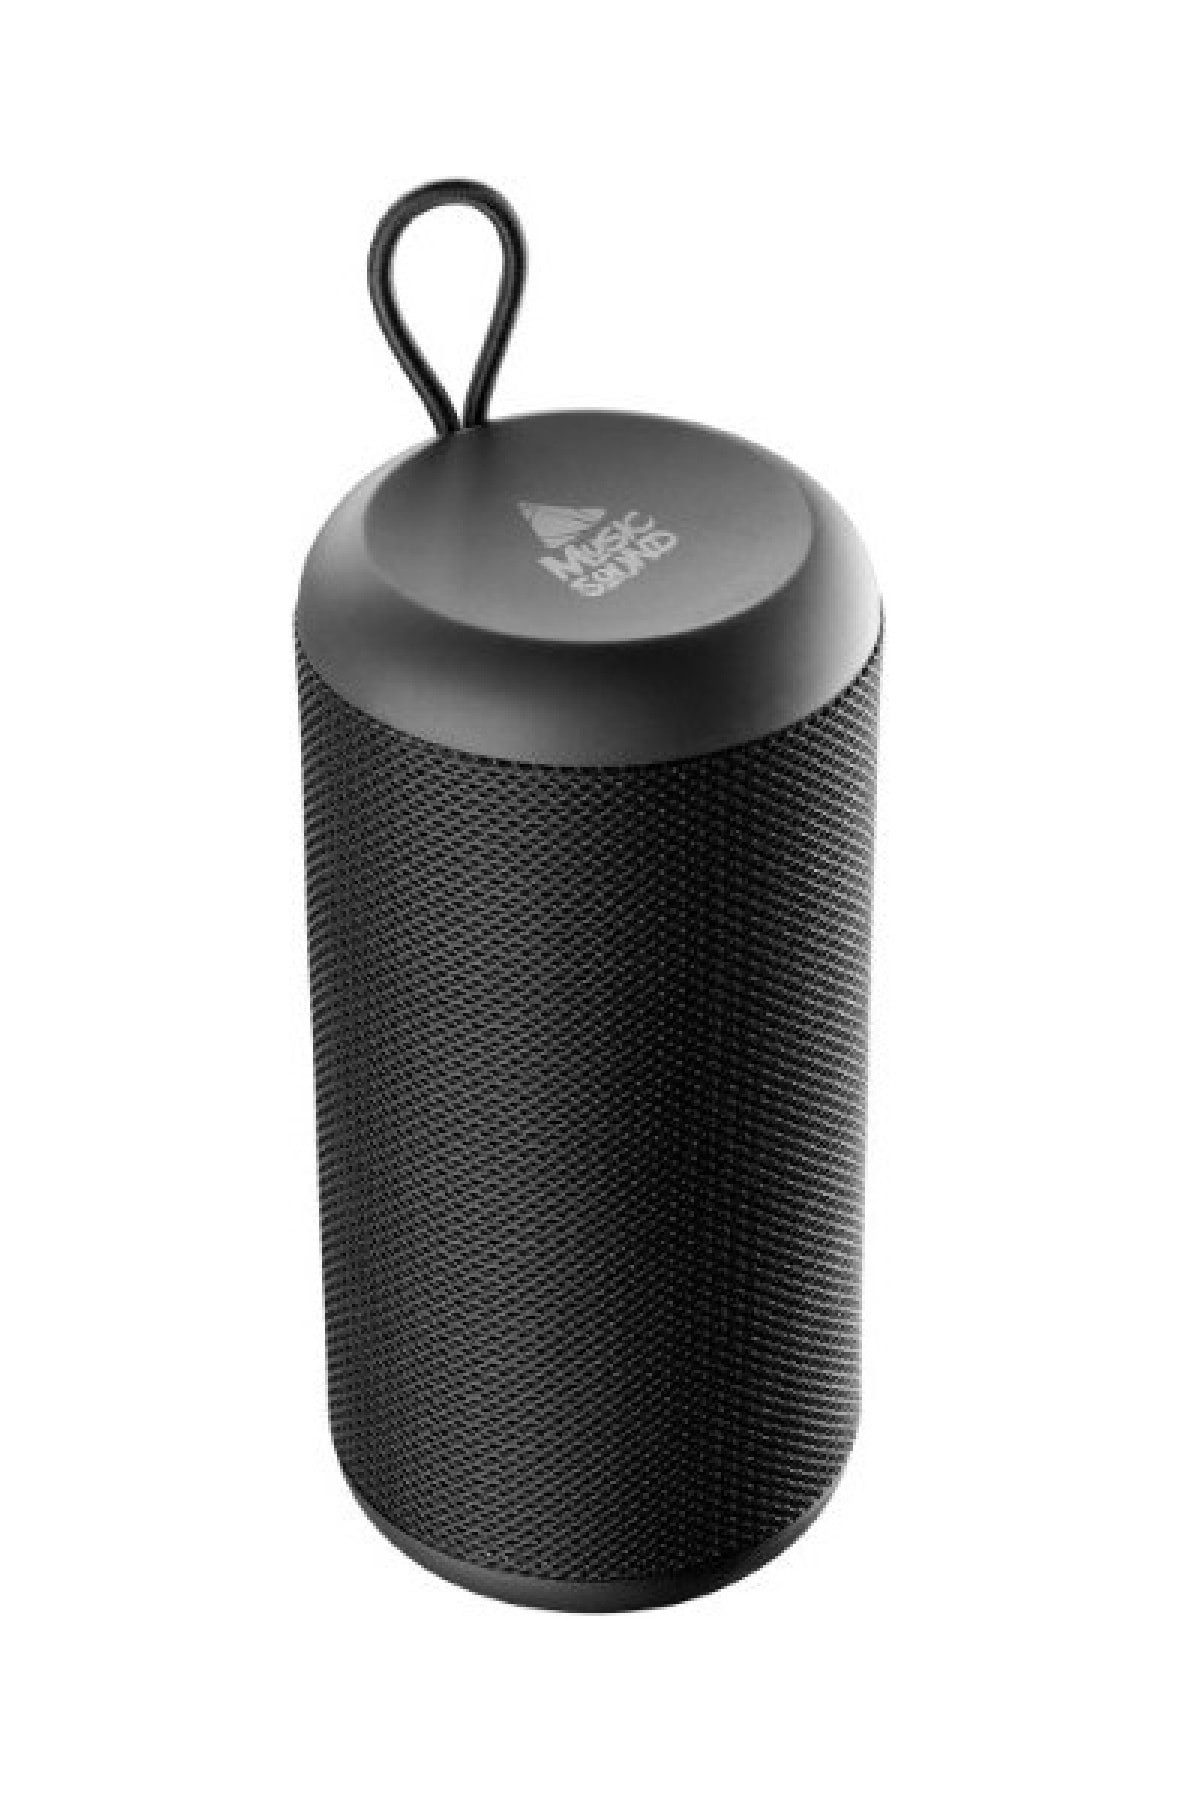 Cellurline Cellularline Trendyol - Sound Bluetooth Speaker Vertıcal Fiyatı, Yorumları Music